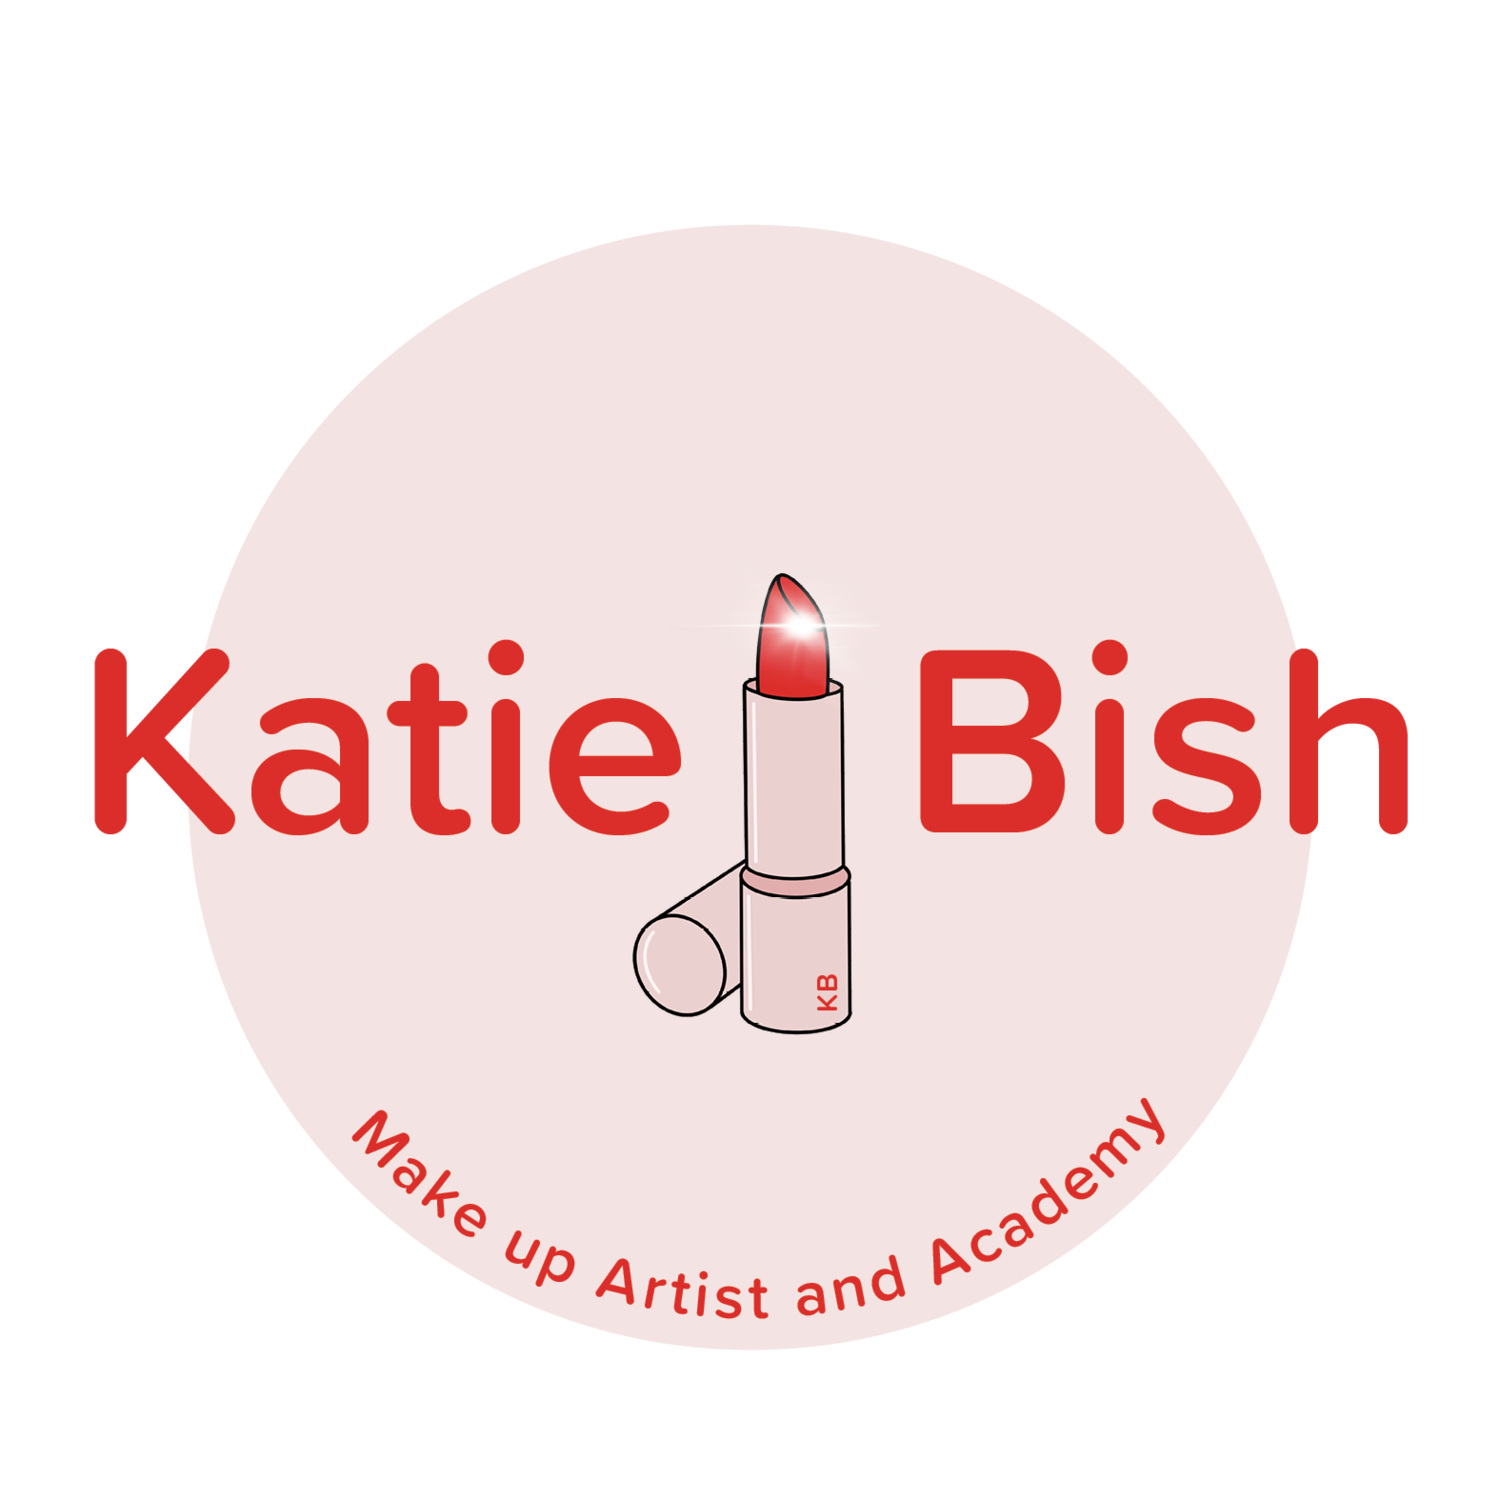 Katie Bish Make Up Artist